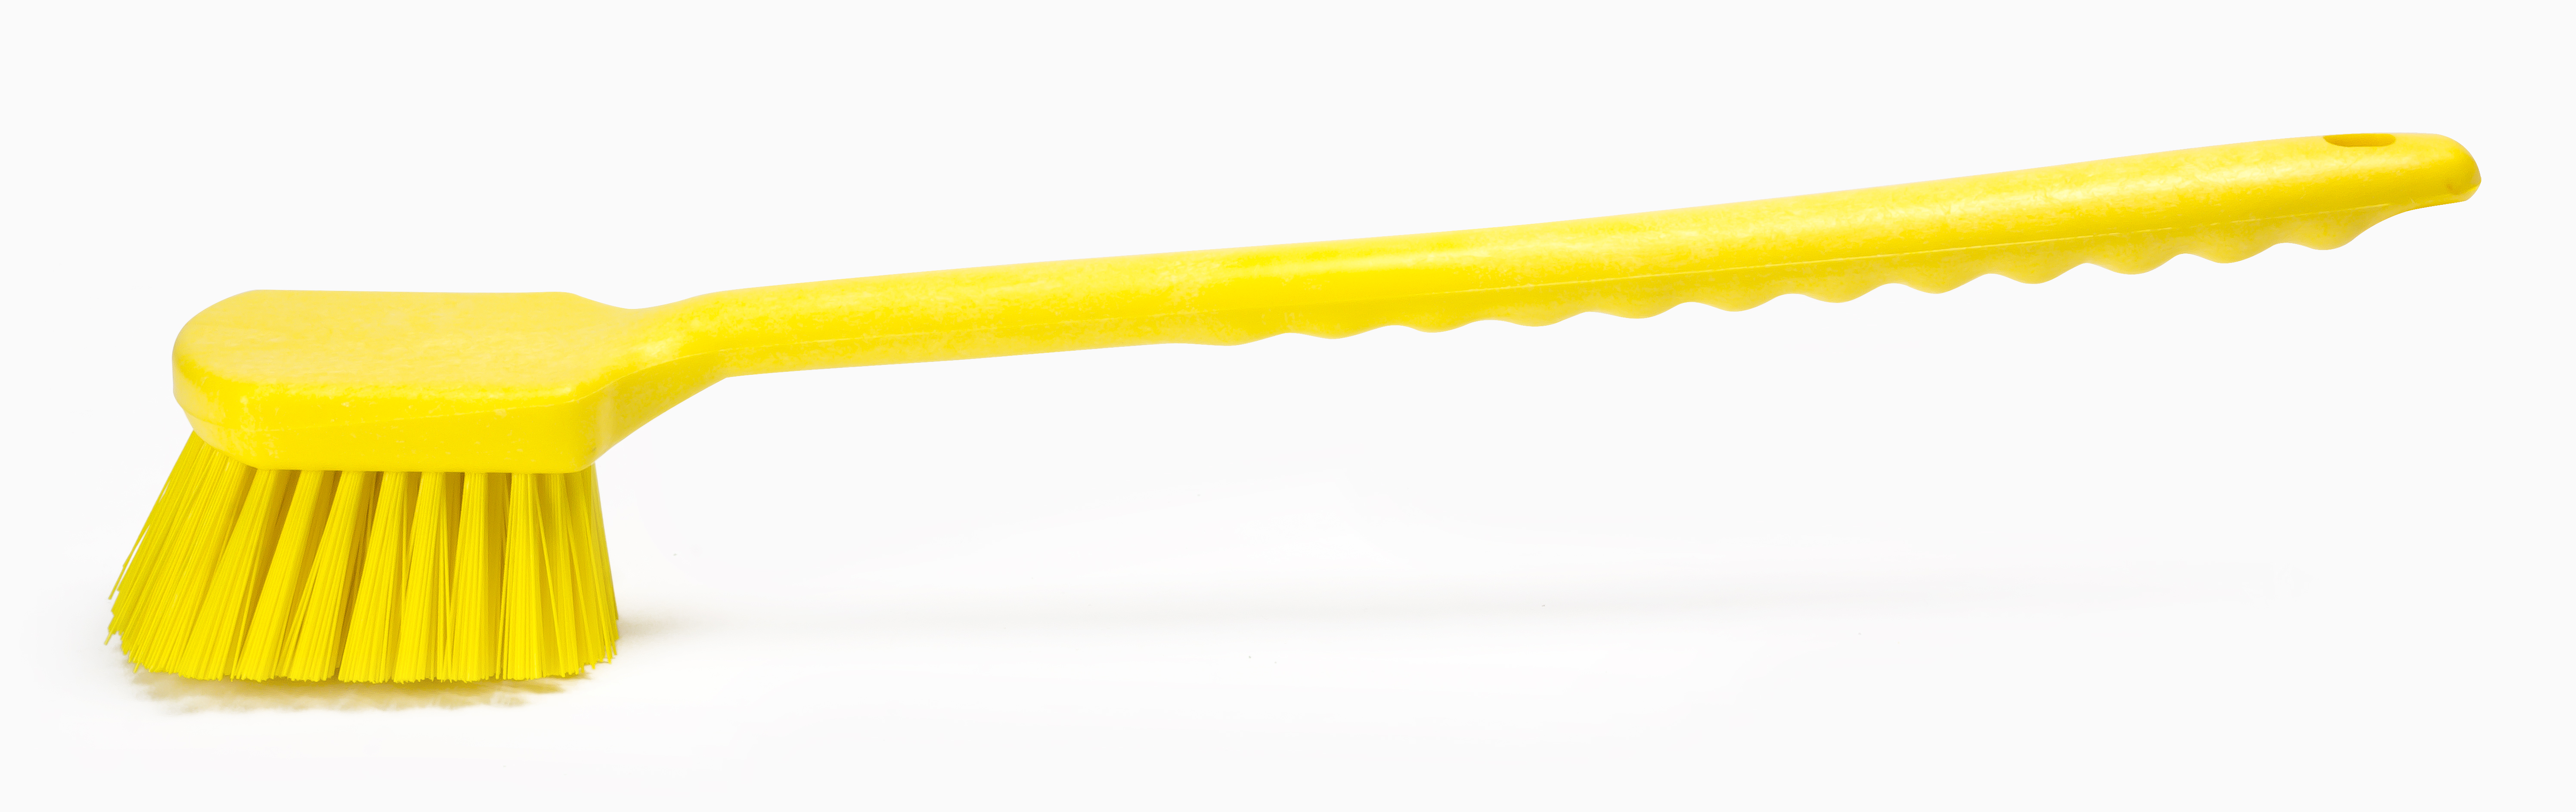 Щетка HACCPER с длинной ручкой, для мытья и оттирки, жесткая, 500 мм, желтая